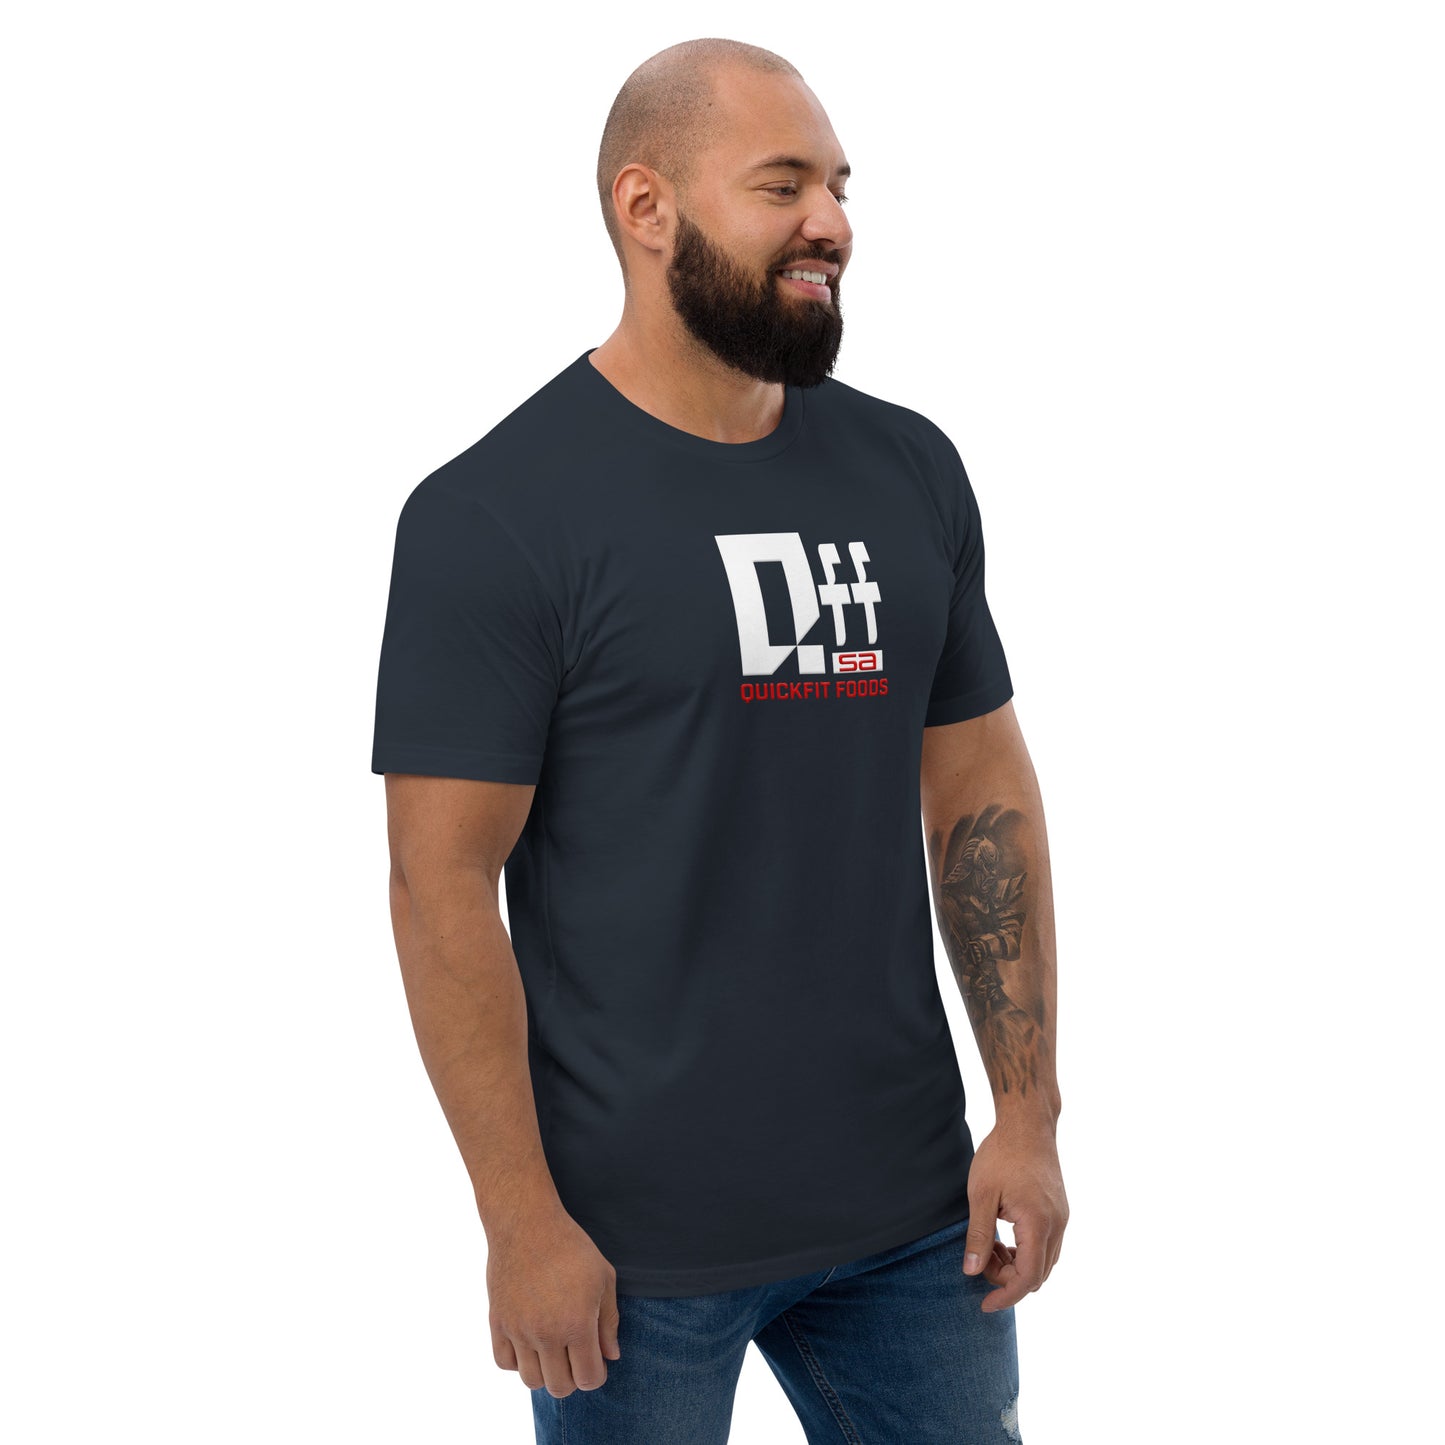 QuickFit Foods SA Short Sleeve T-shirt